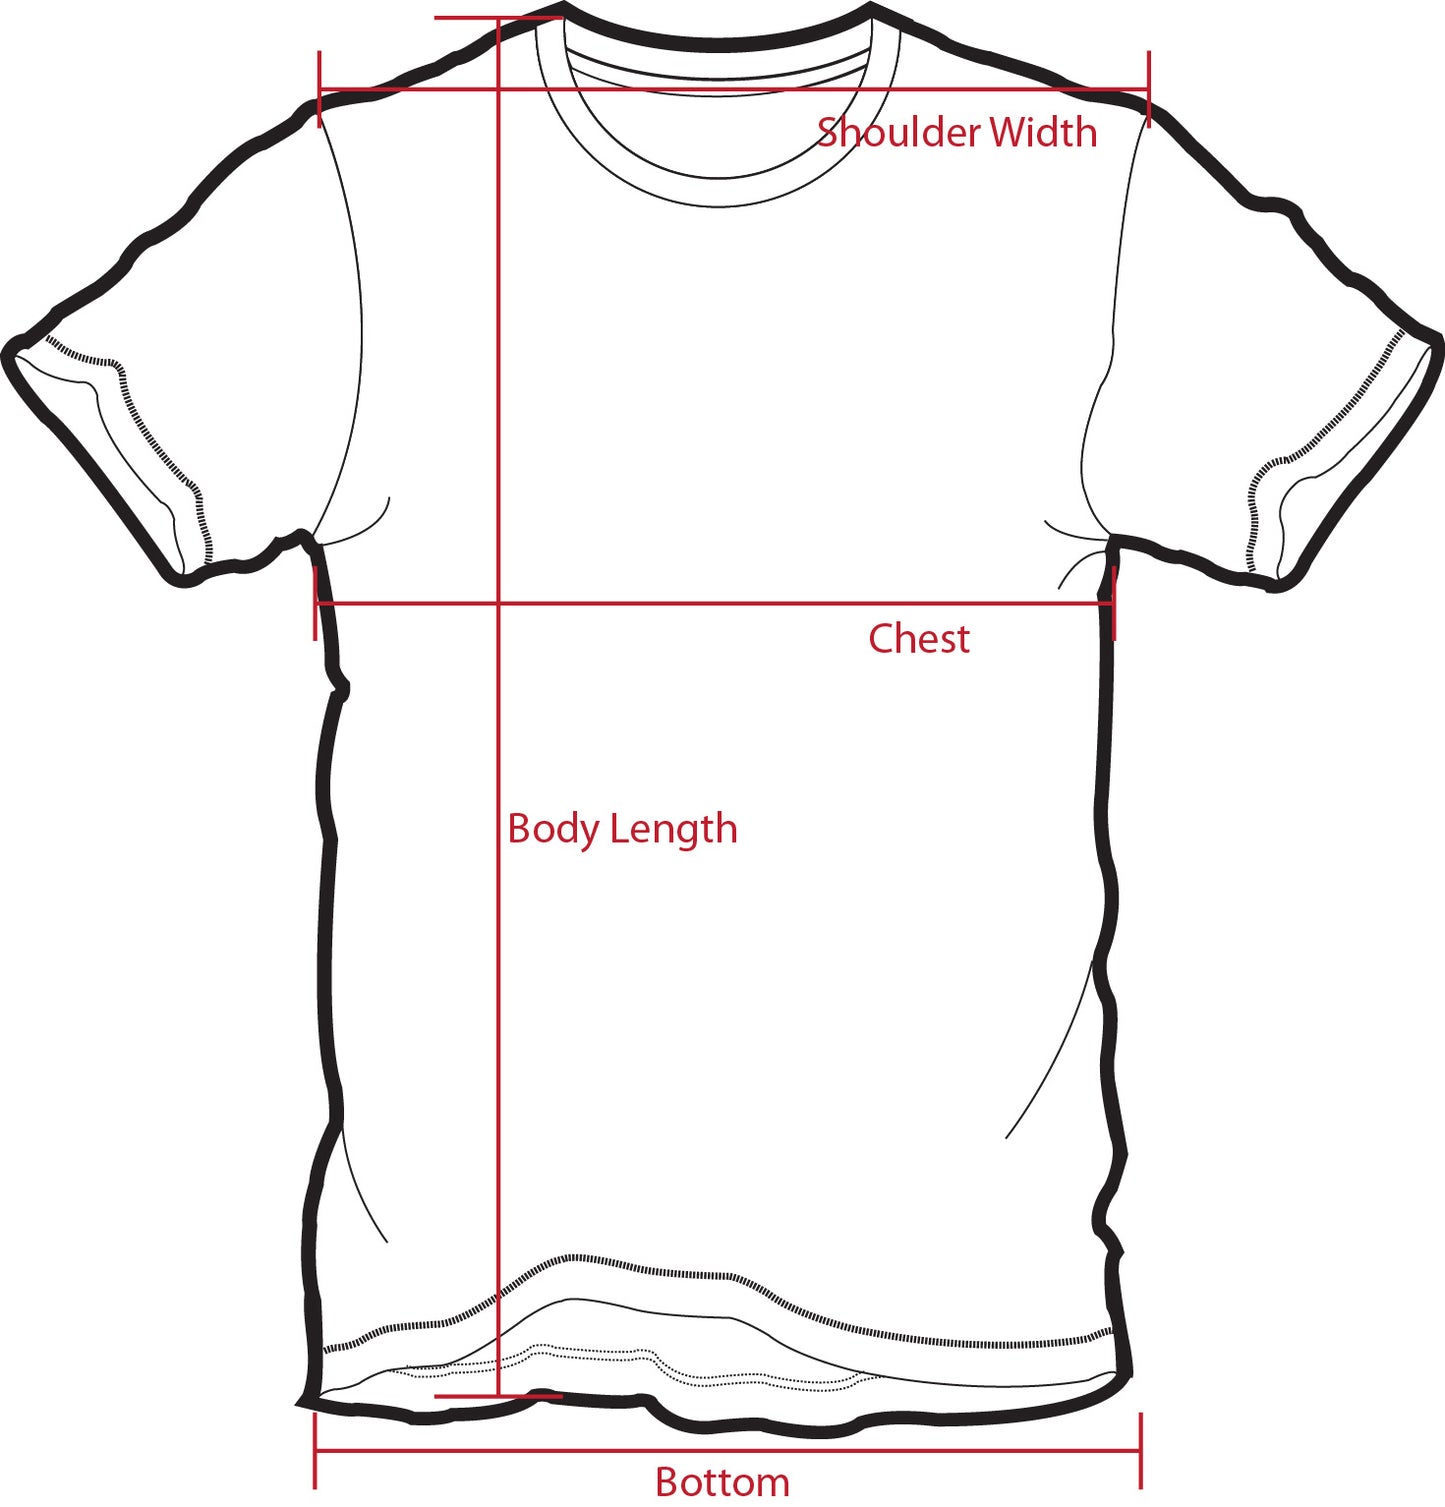 Men's Short Sleeve T-shirt